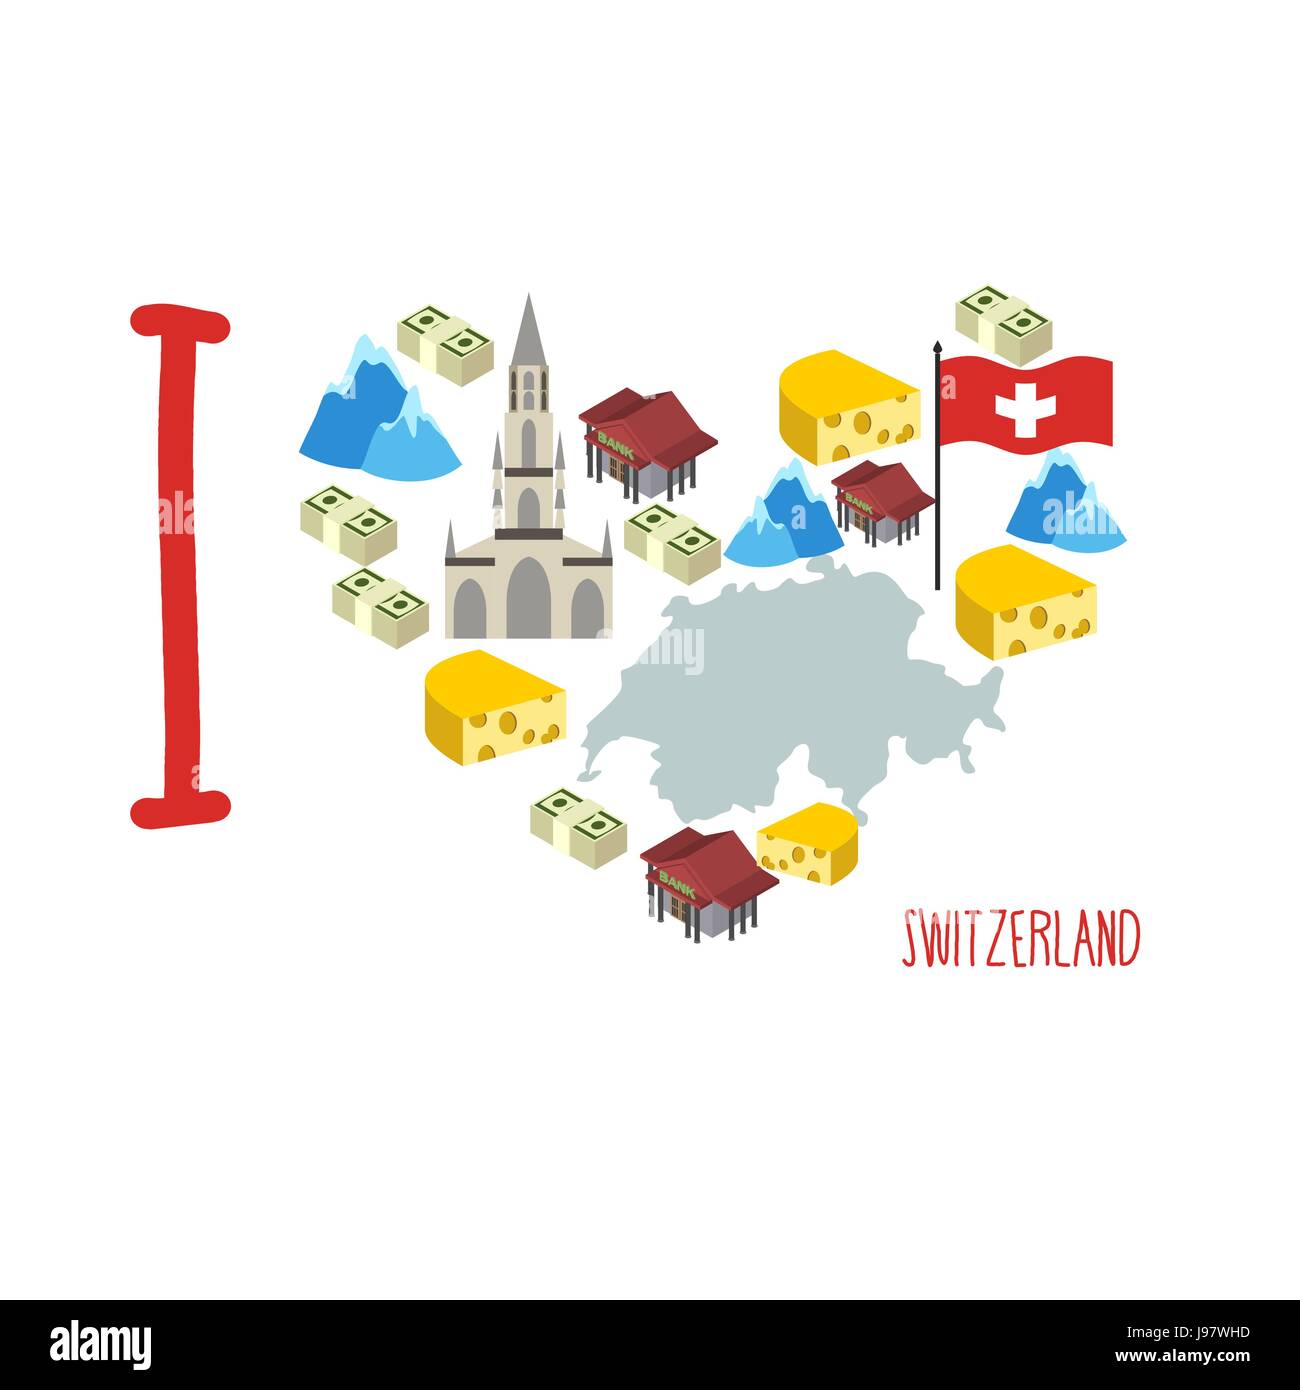 Ich liebe die Schweiz. Symbol Herz Käse und Alpen, Bank und Geld. Karte der  Schweiz. Touristen-Logo. Vektor-illustration Stock-Vektorgrafik - Alamy